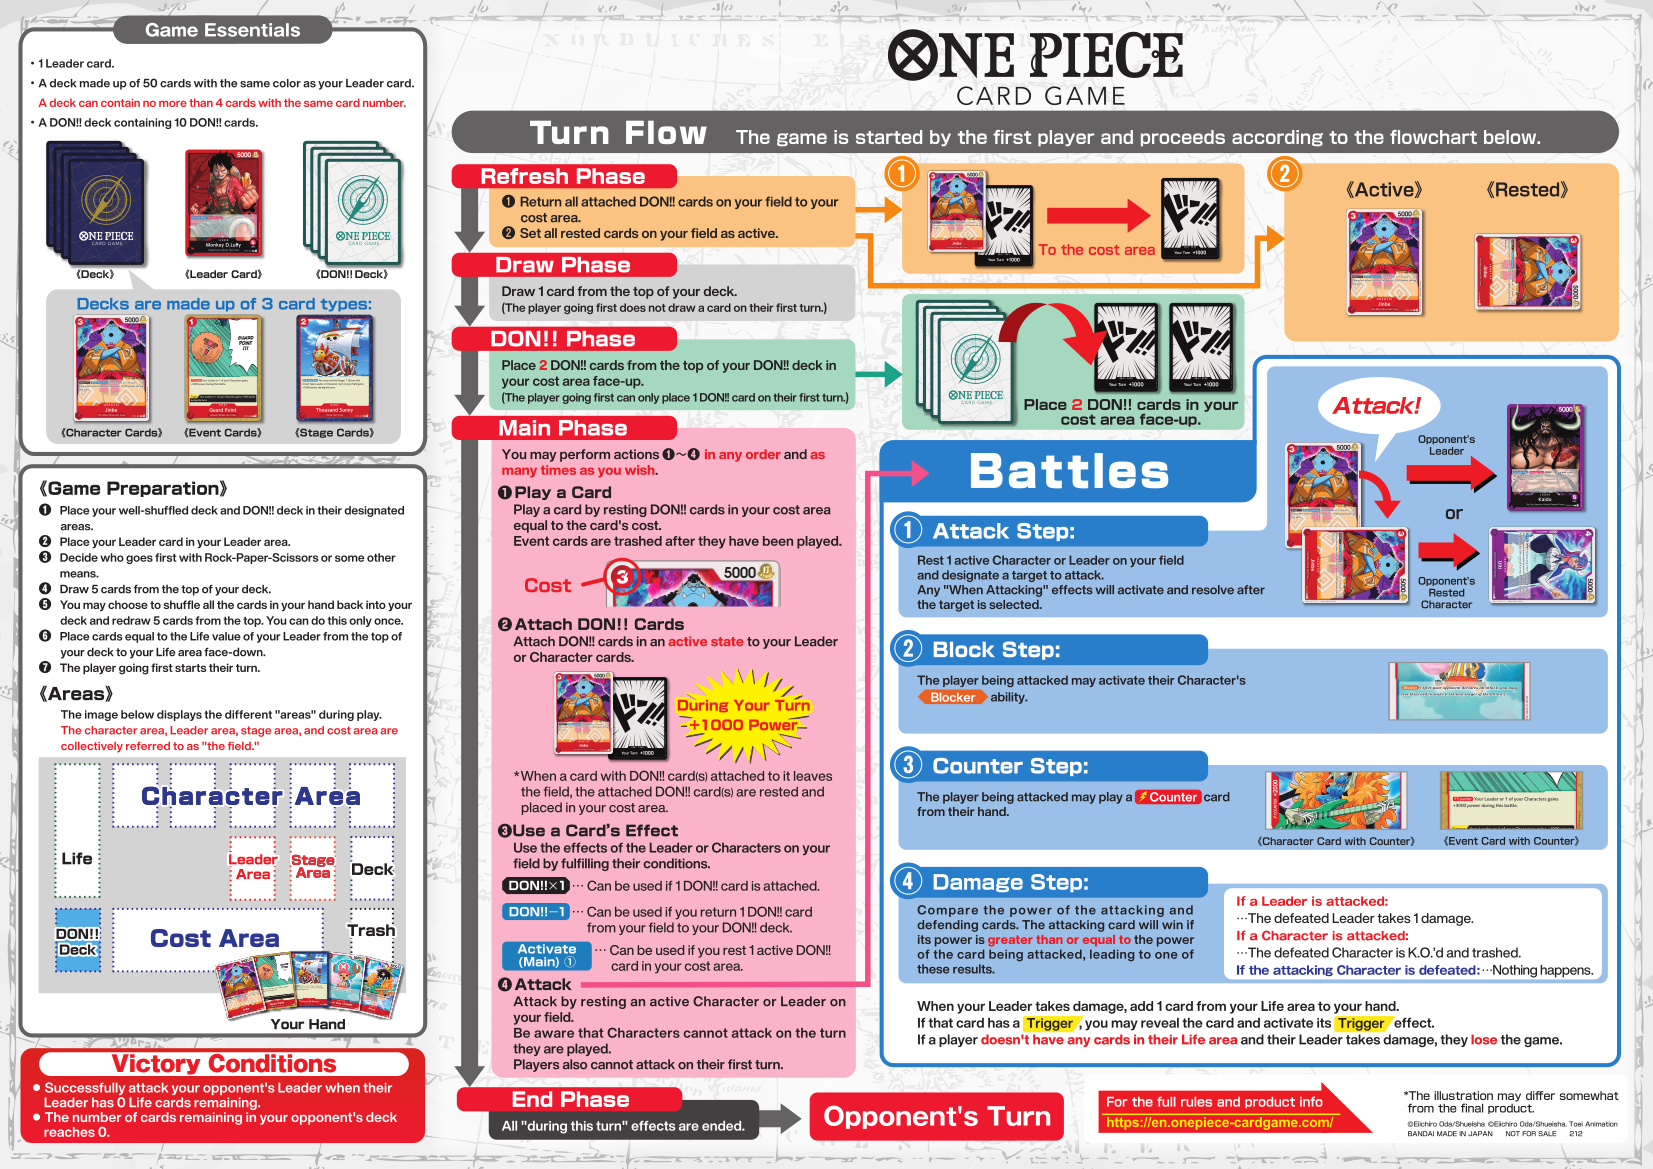 [JAP] - One Piece 12 Cartes promo du film RED - Pack Final Set